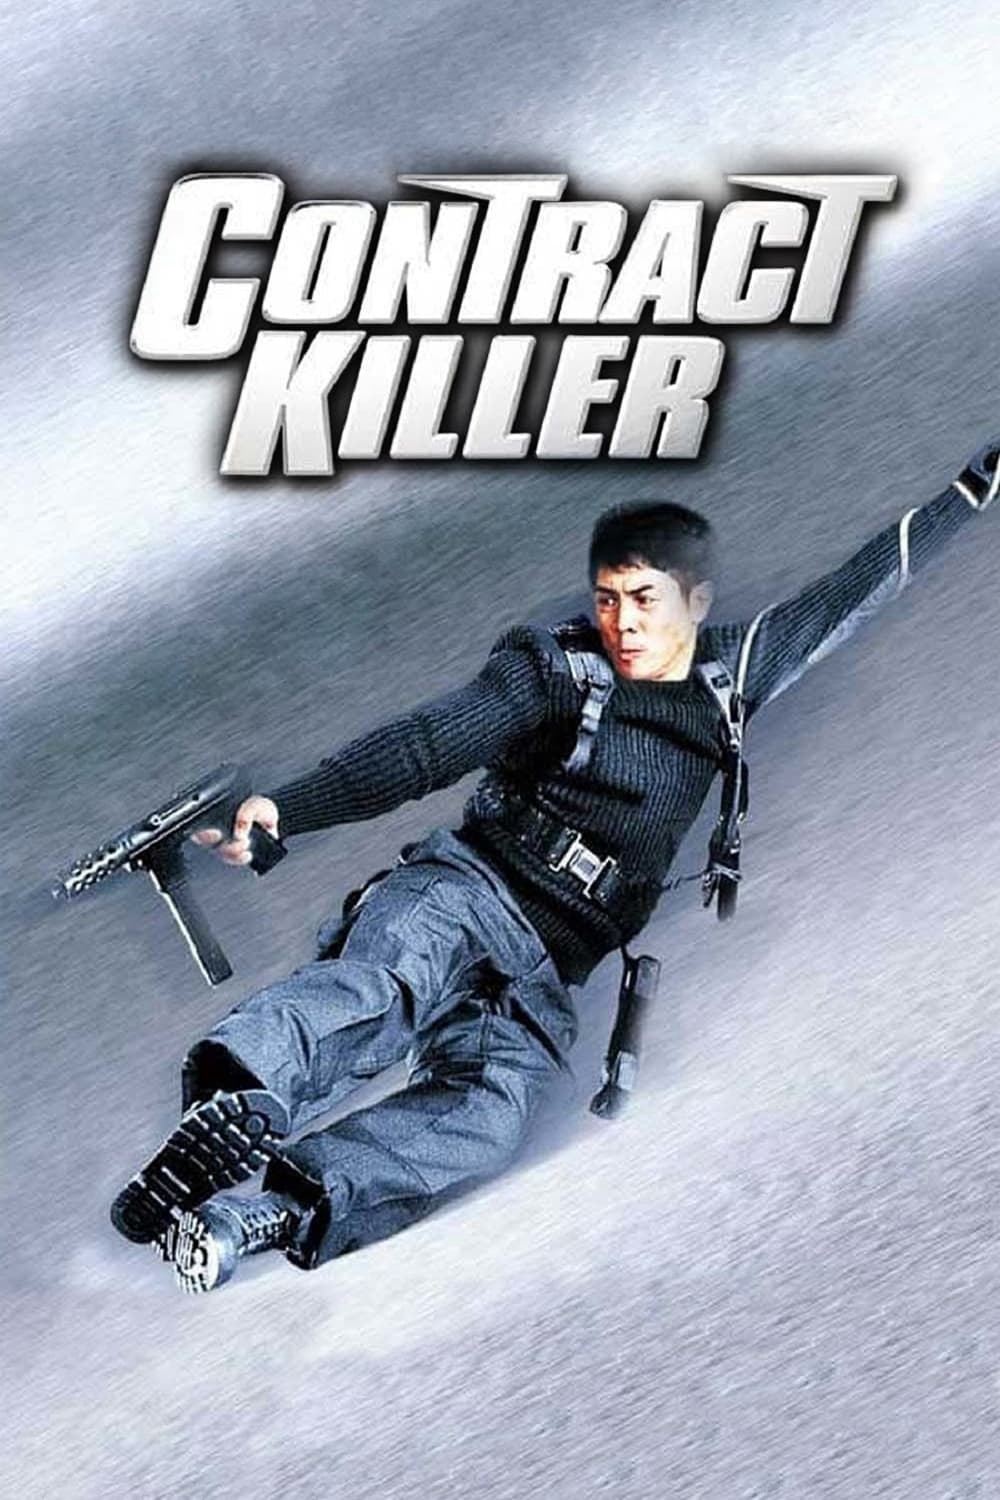 Poster Phim Sat sau ji wong (Contract Killer)